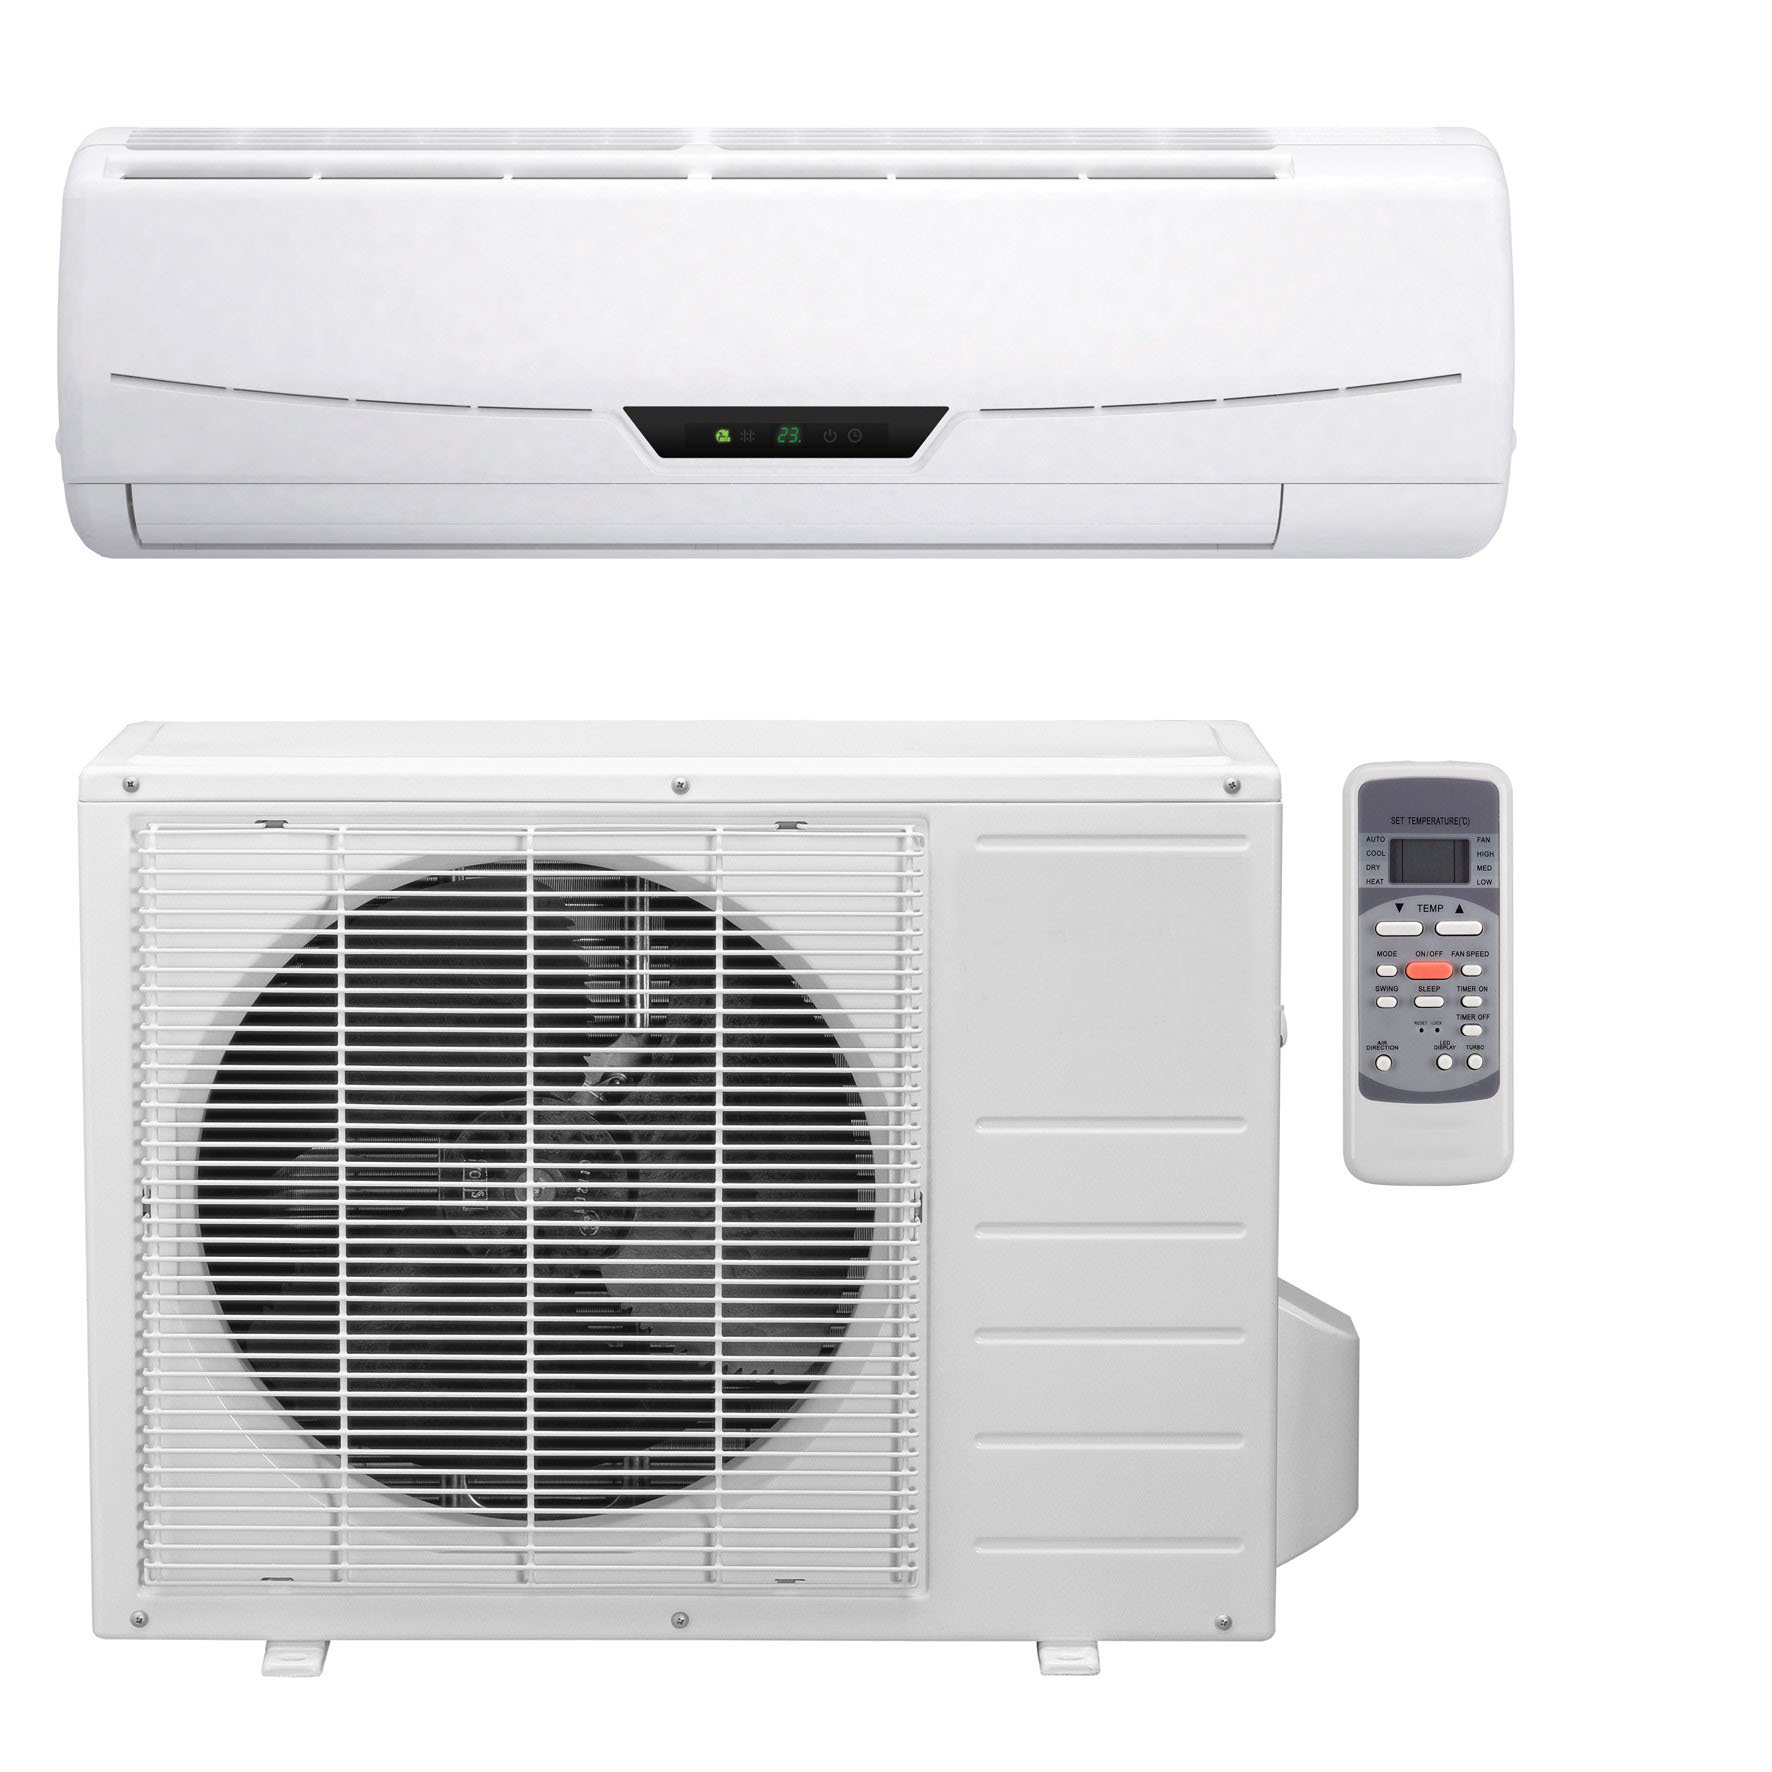 Solar DC air conditioner